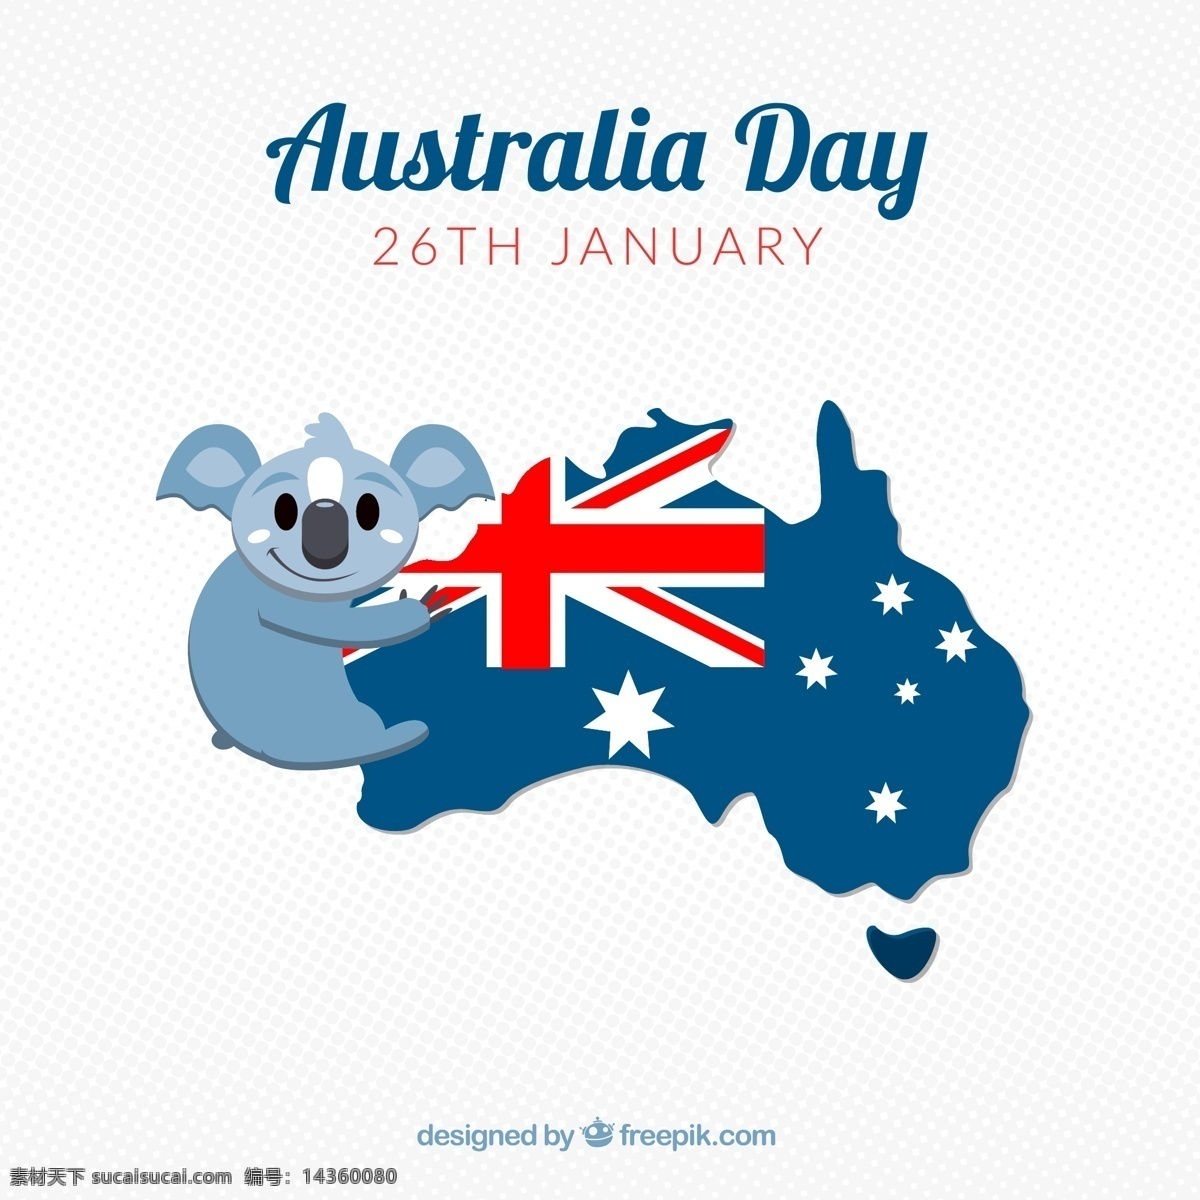 可爱 澳大利亚 日 考拉 地图 考拉熊 澳大利亚日 澳大利亚地图 澳大利亚国旗 澳大利亚考拉 文化艺术 绘画书法